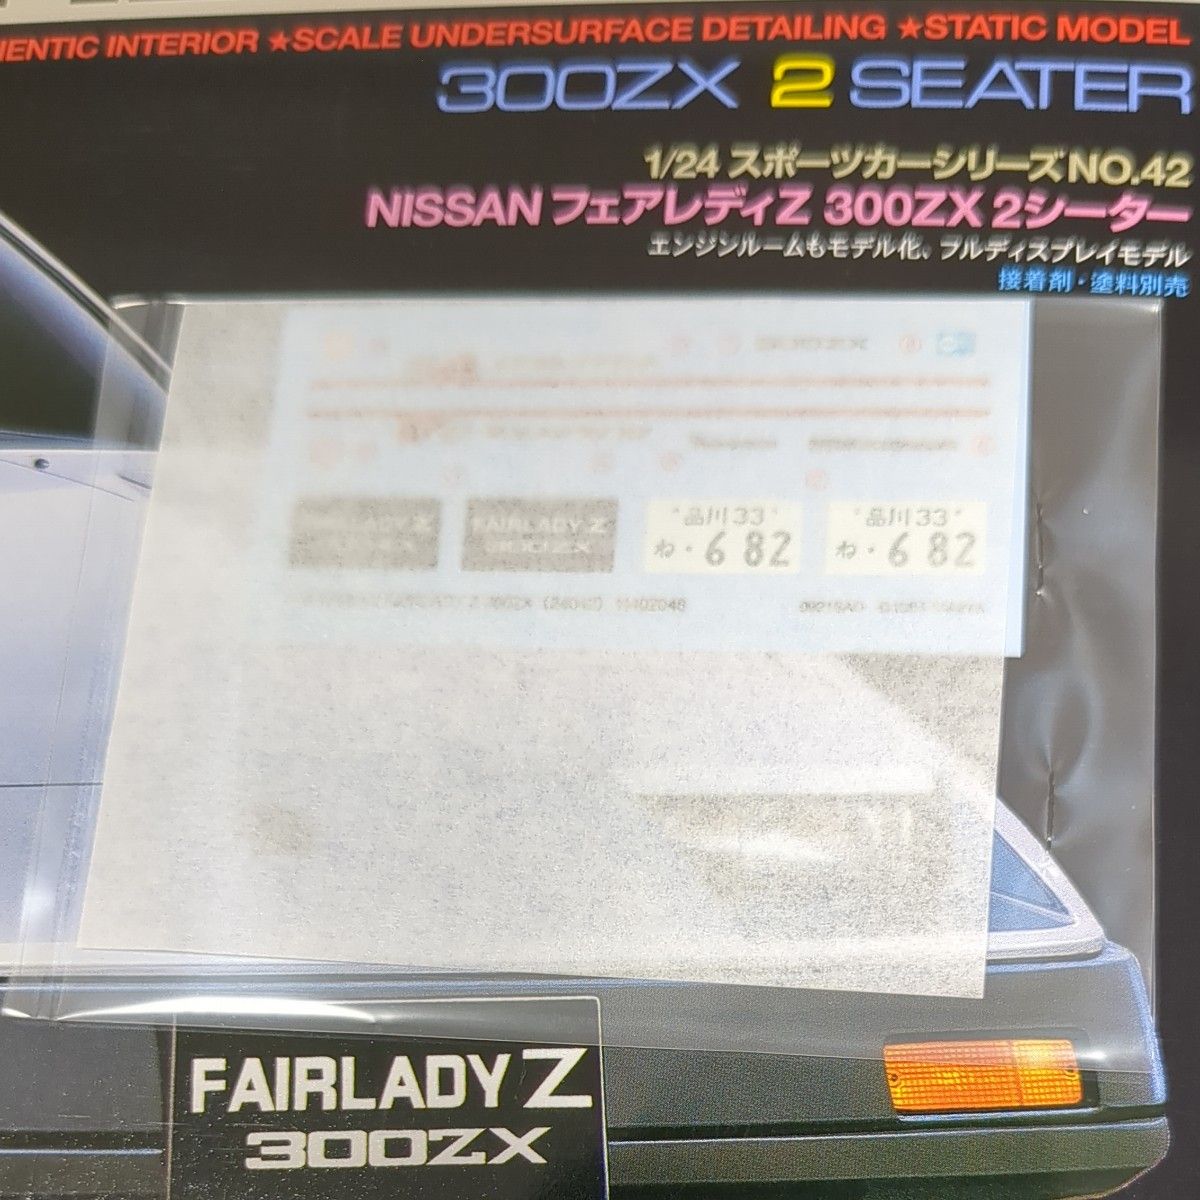 ニッサン フェアレディ Z 300ZX 2シーター  1/24  タミヤ